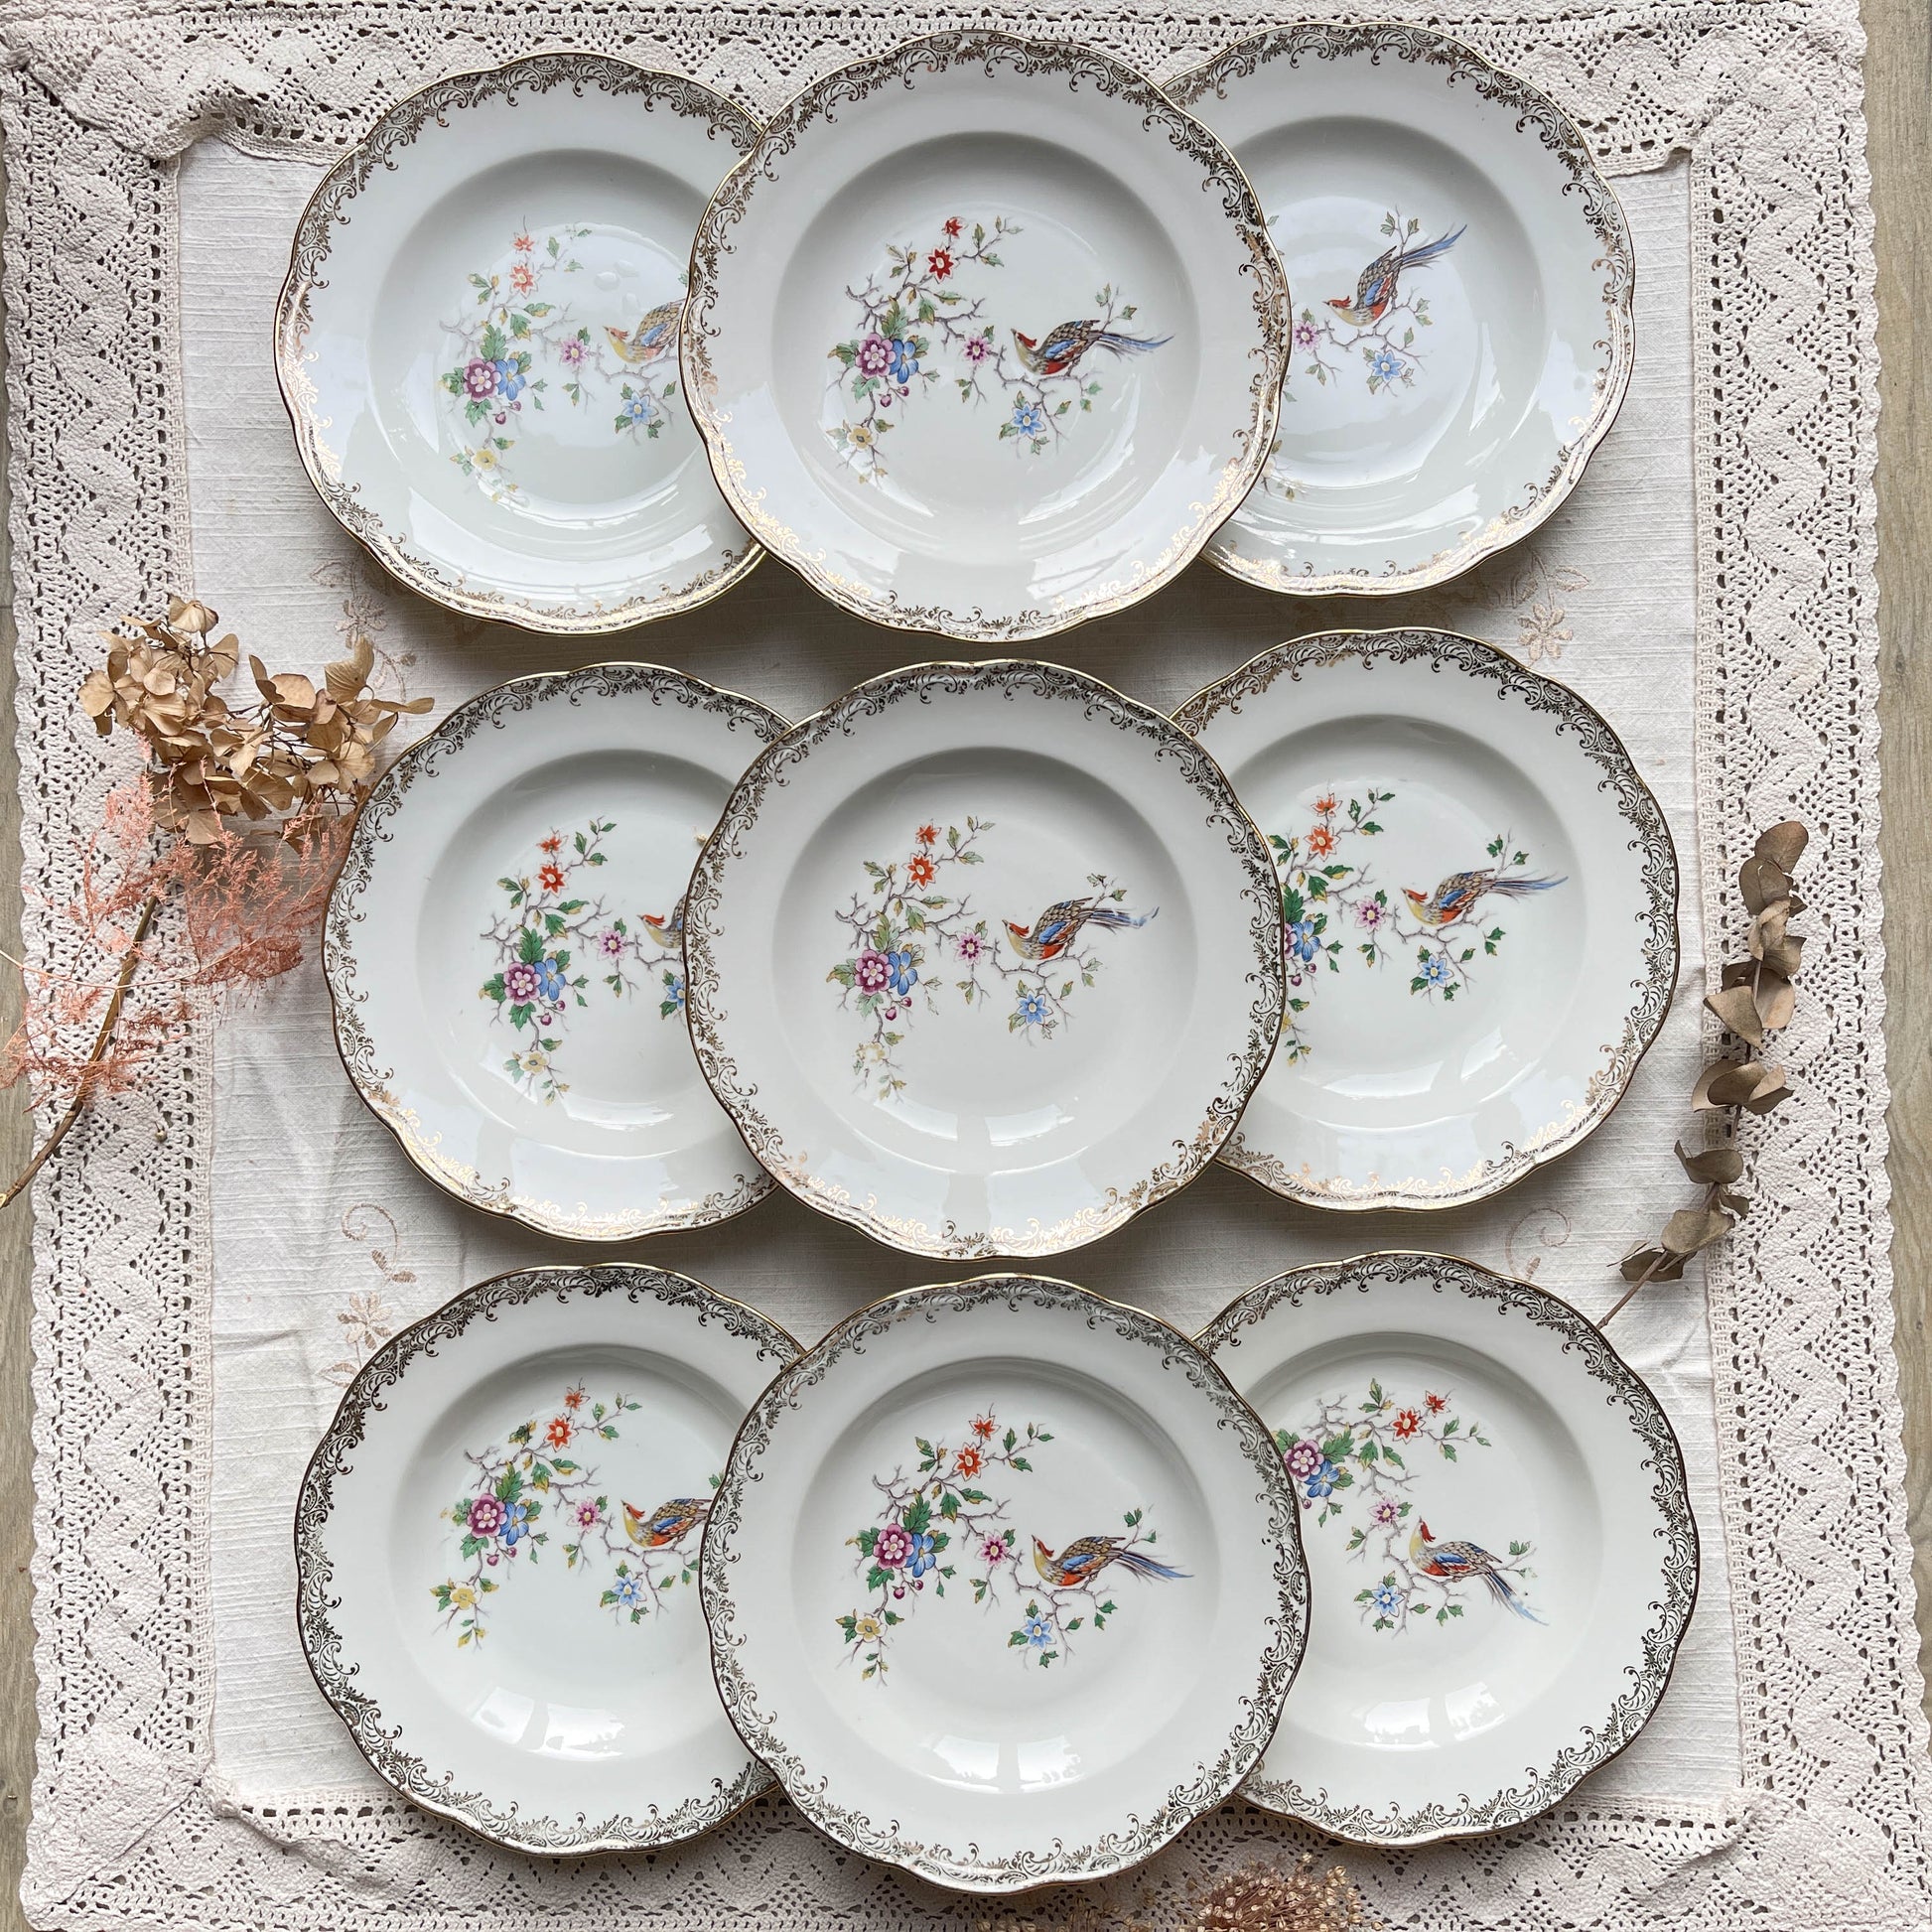 9 Assiettes creuses en porcelaine vintage Real Opalor Export motif oiseau de paradis